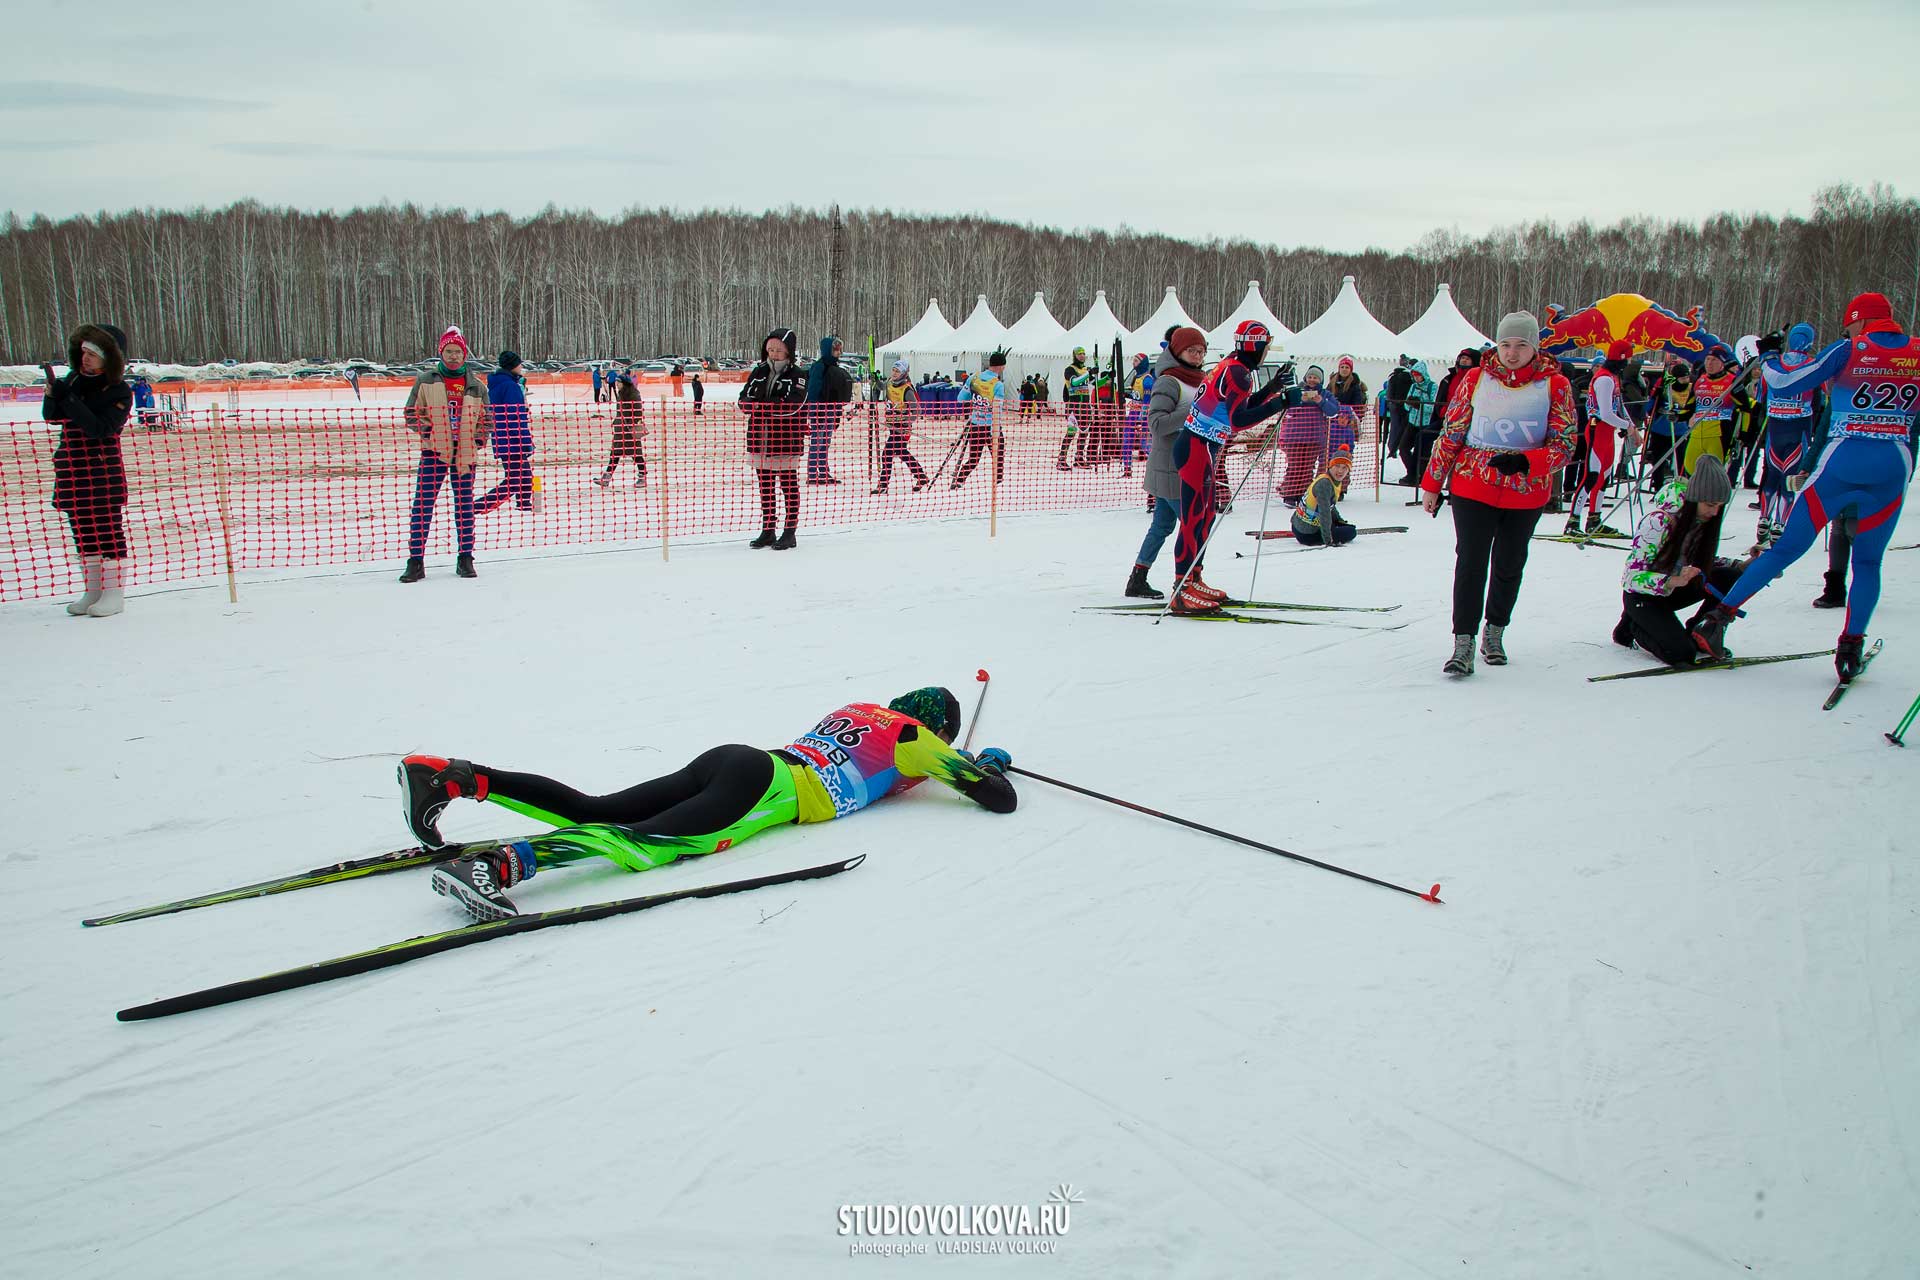 Лыжный марафон «Европа-Азия 2019». фотограф Владислав ВОЛКОВ г.Екатеринбург